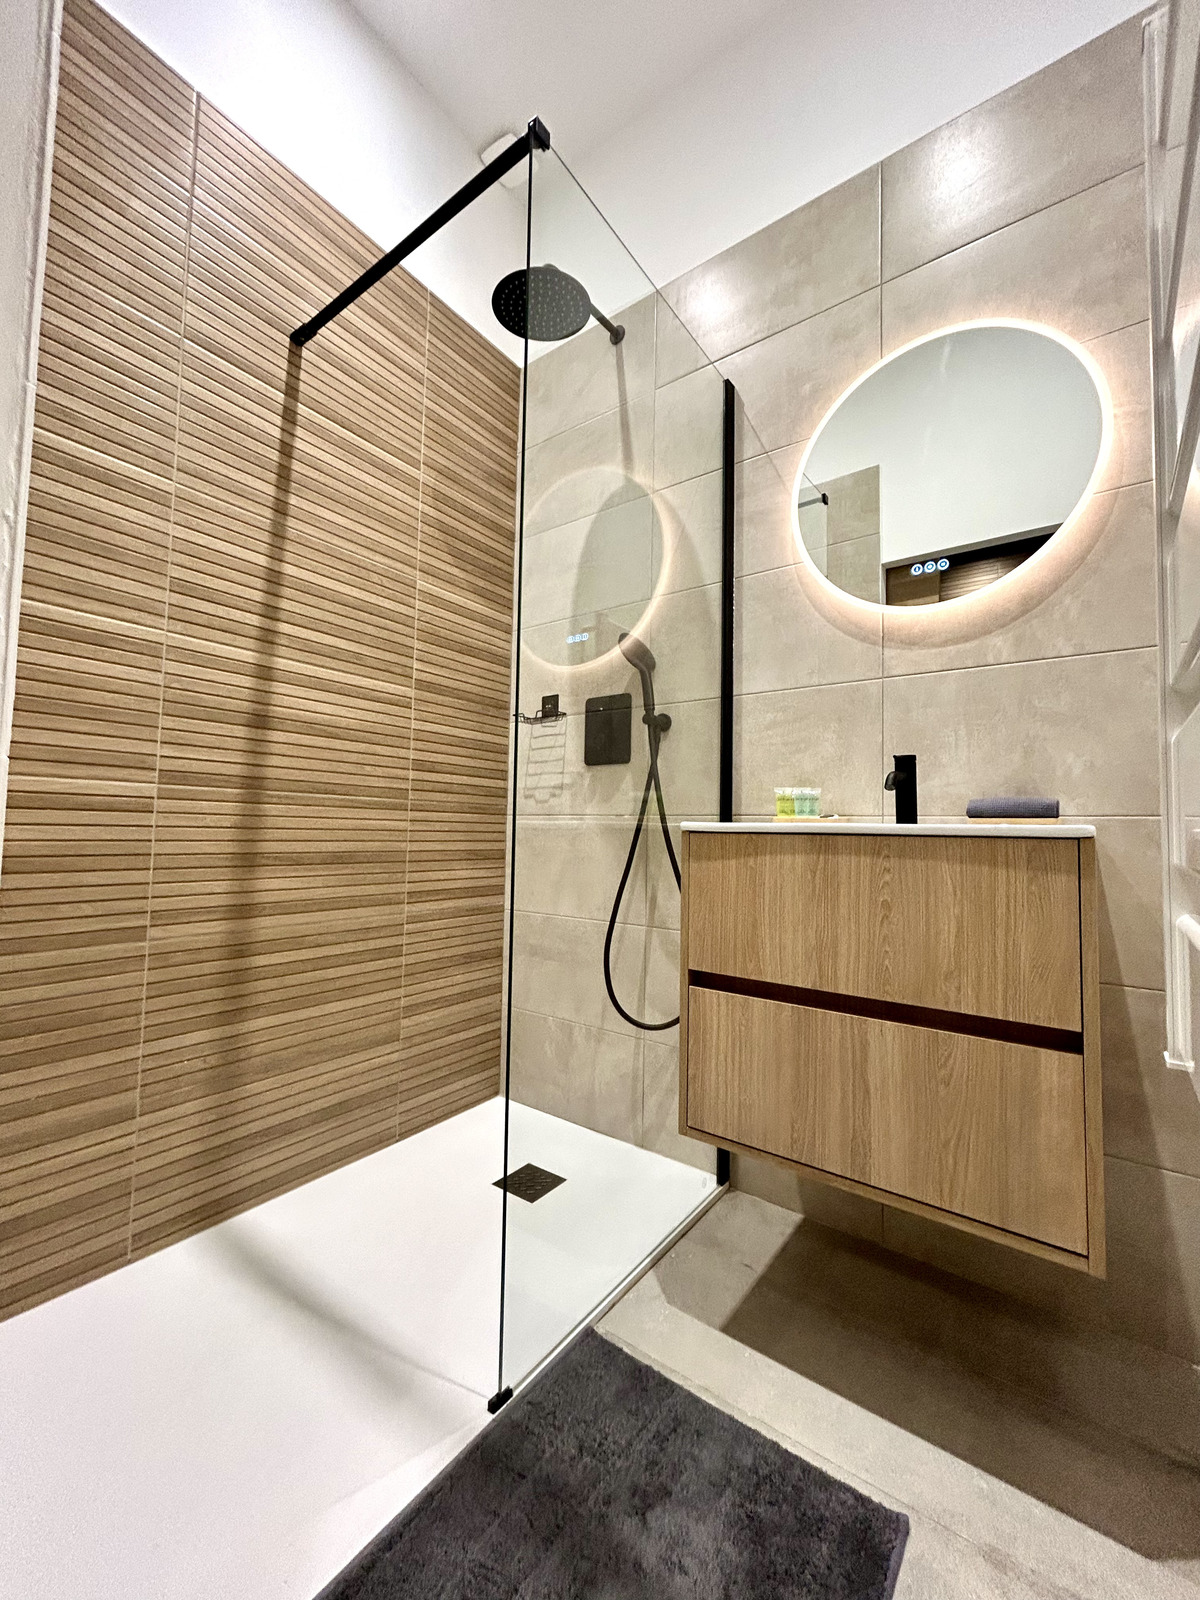 Aménagement d’une love room à Troyes - salle de bain avec large douche